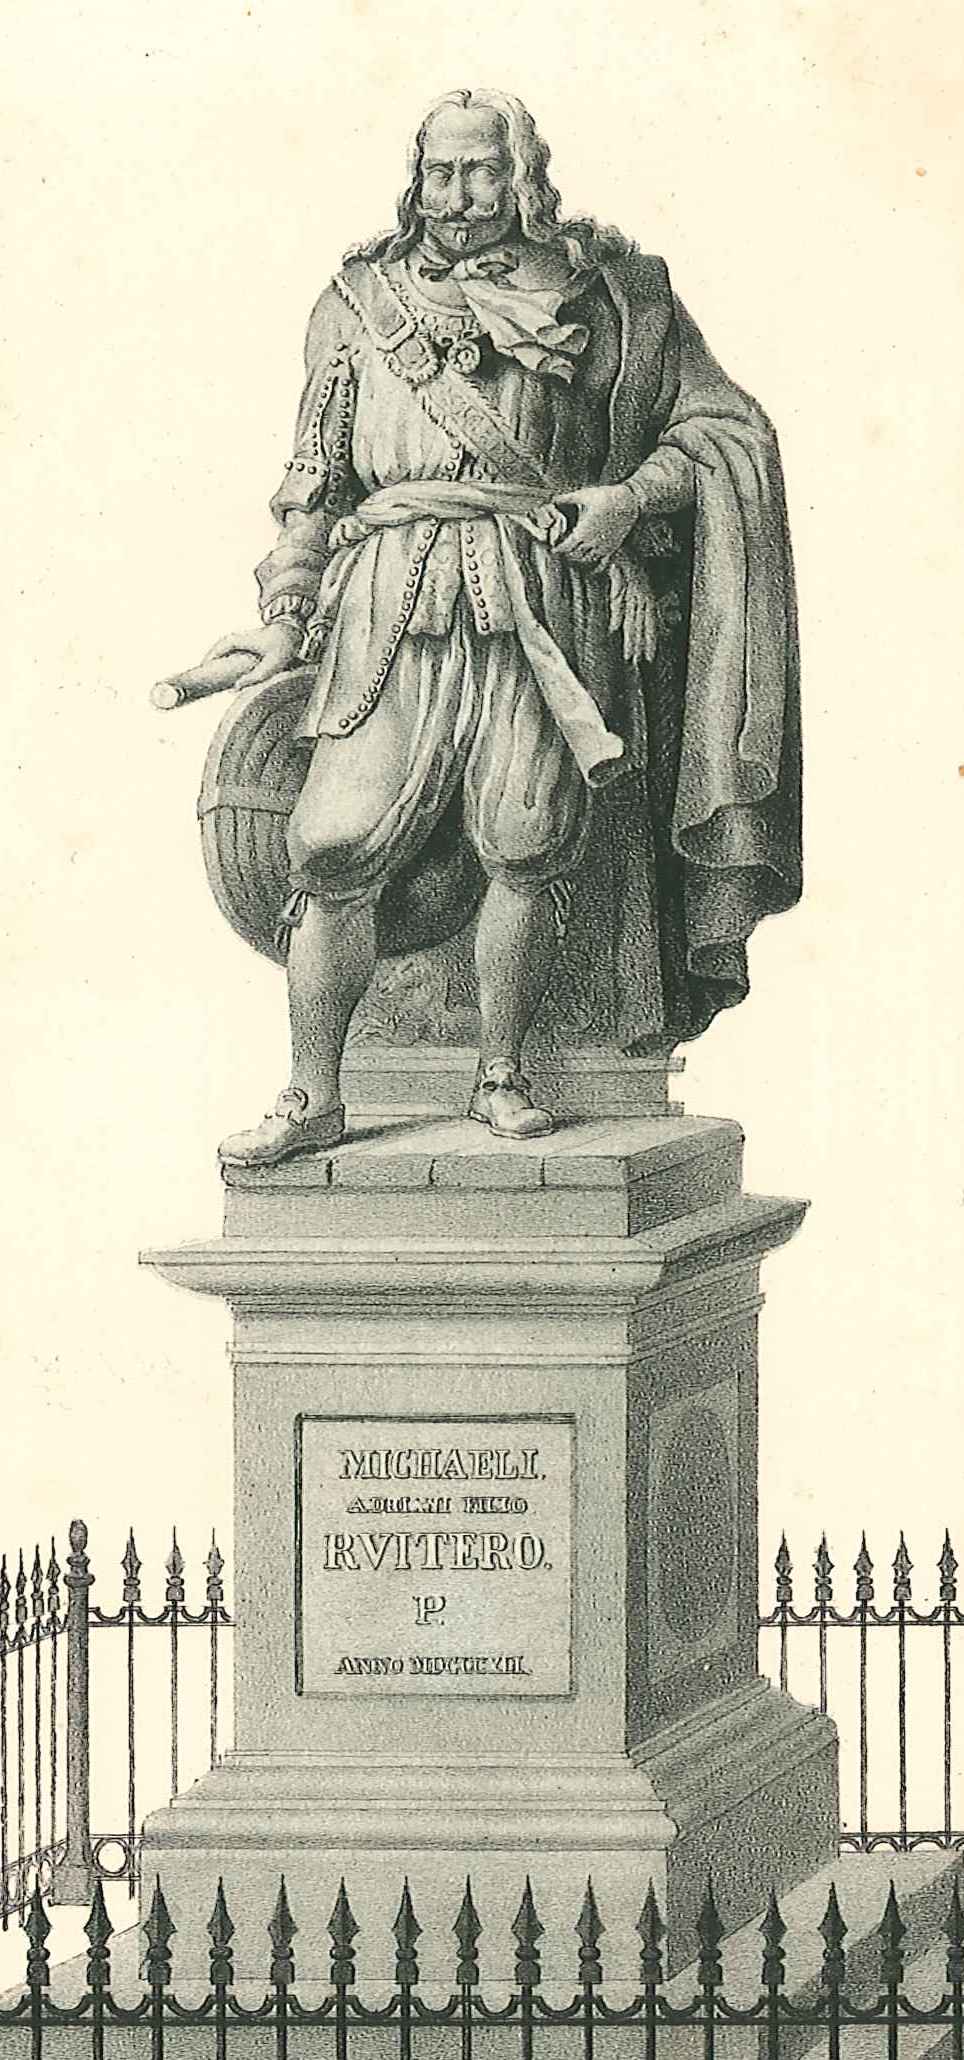 Standbeeld van M.A. de Ruyter te Vlissingen, afbeelding uit de brochure van de onthulling. Vlissingen 1842. GAG.HB.